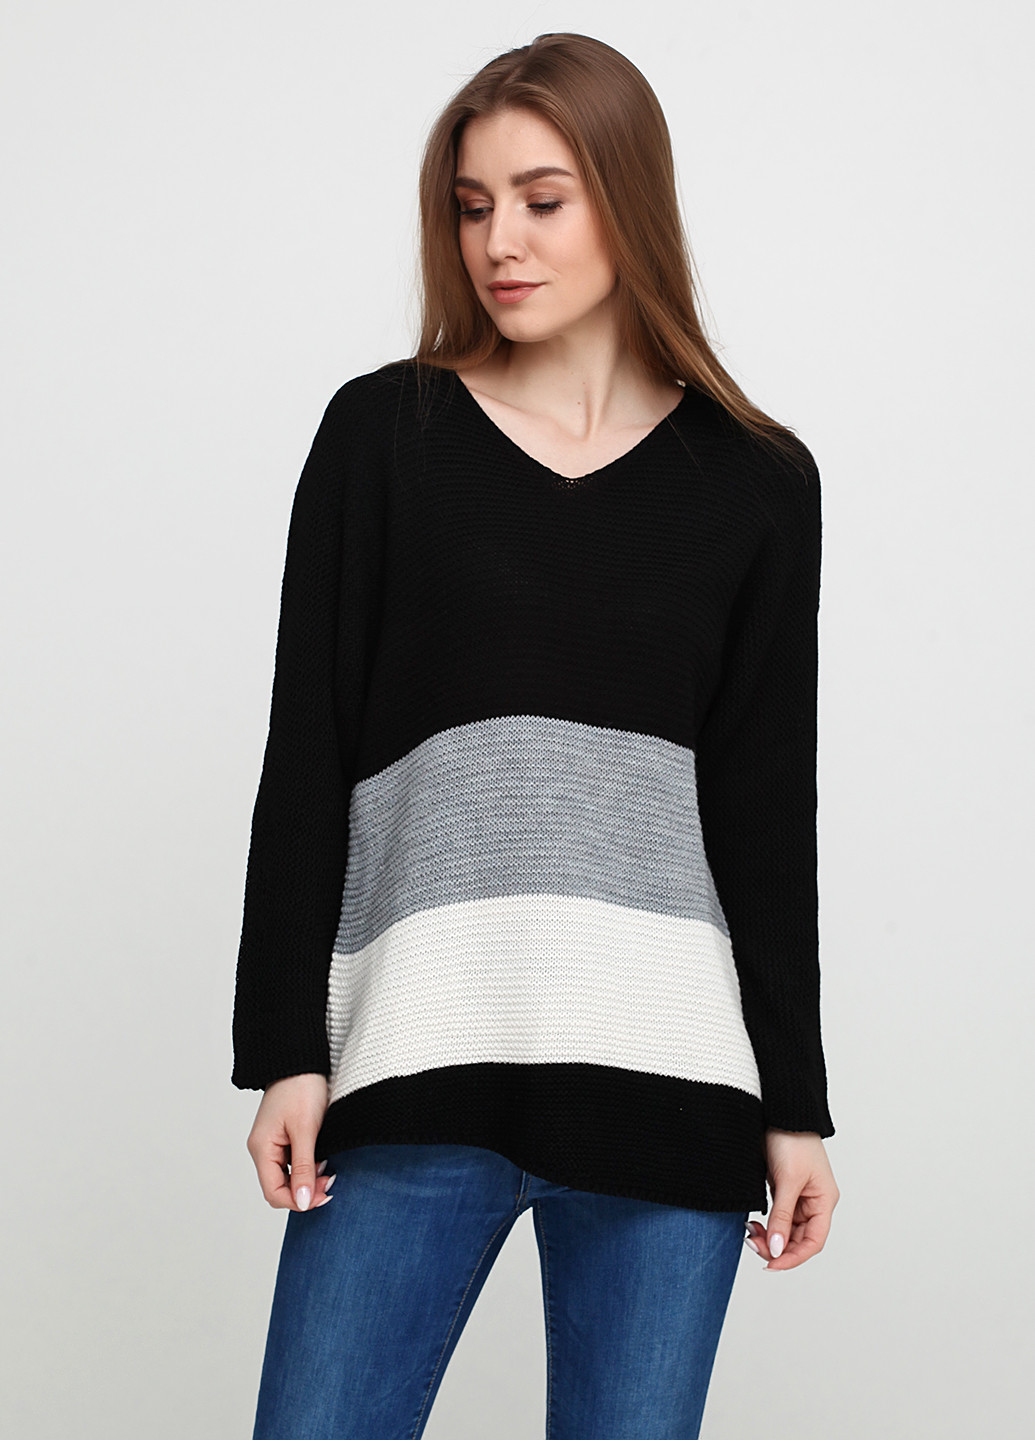 Черный демисезонный пуловер пуловер Askar Triko